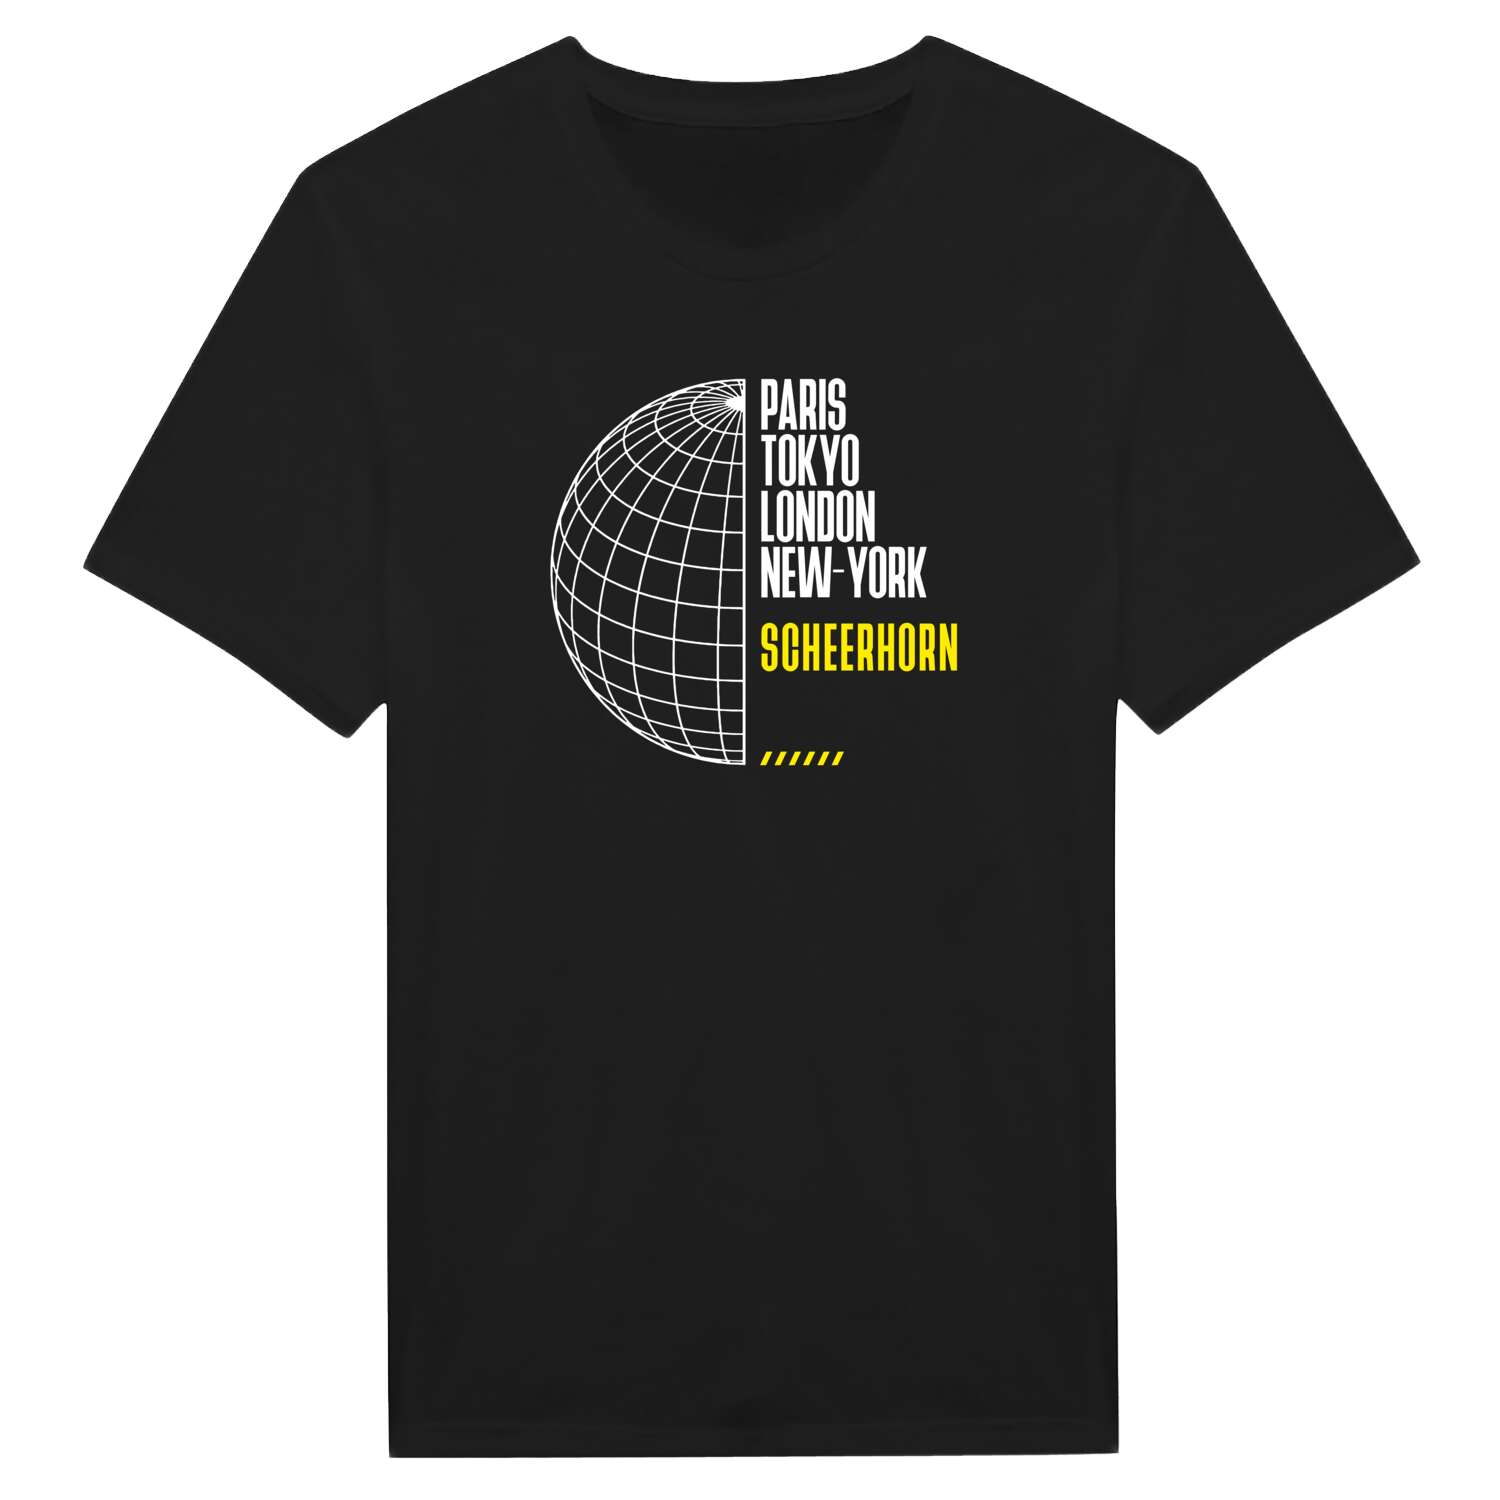 Scheerhorn T-Shirt »Paris Tokyo London«